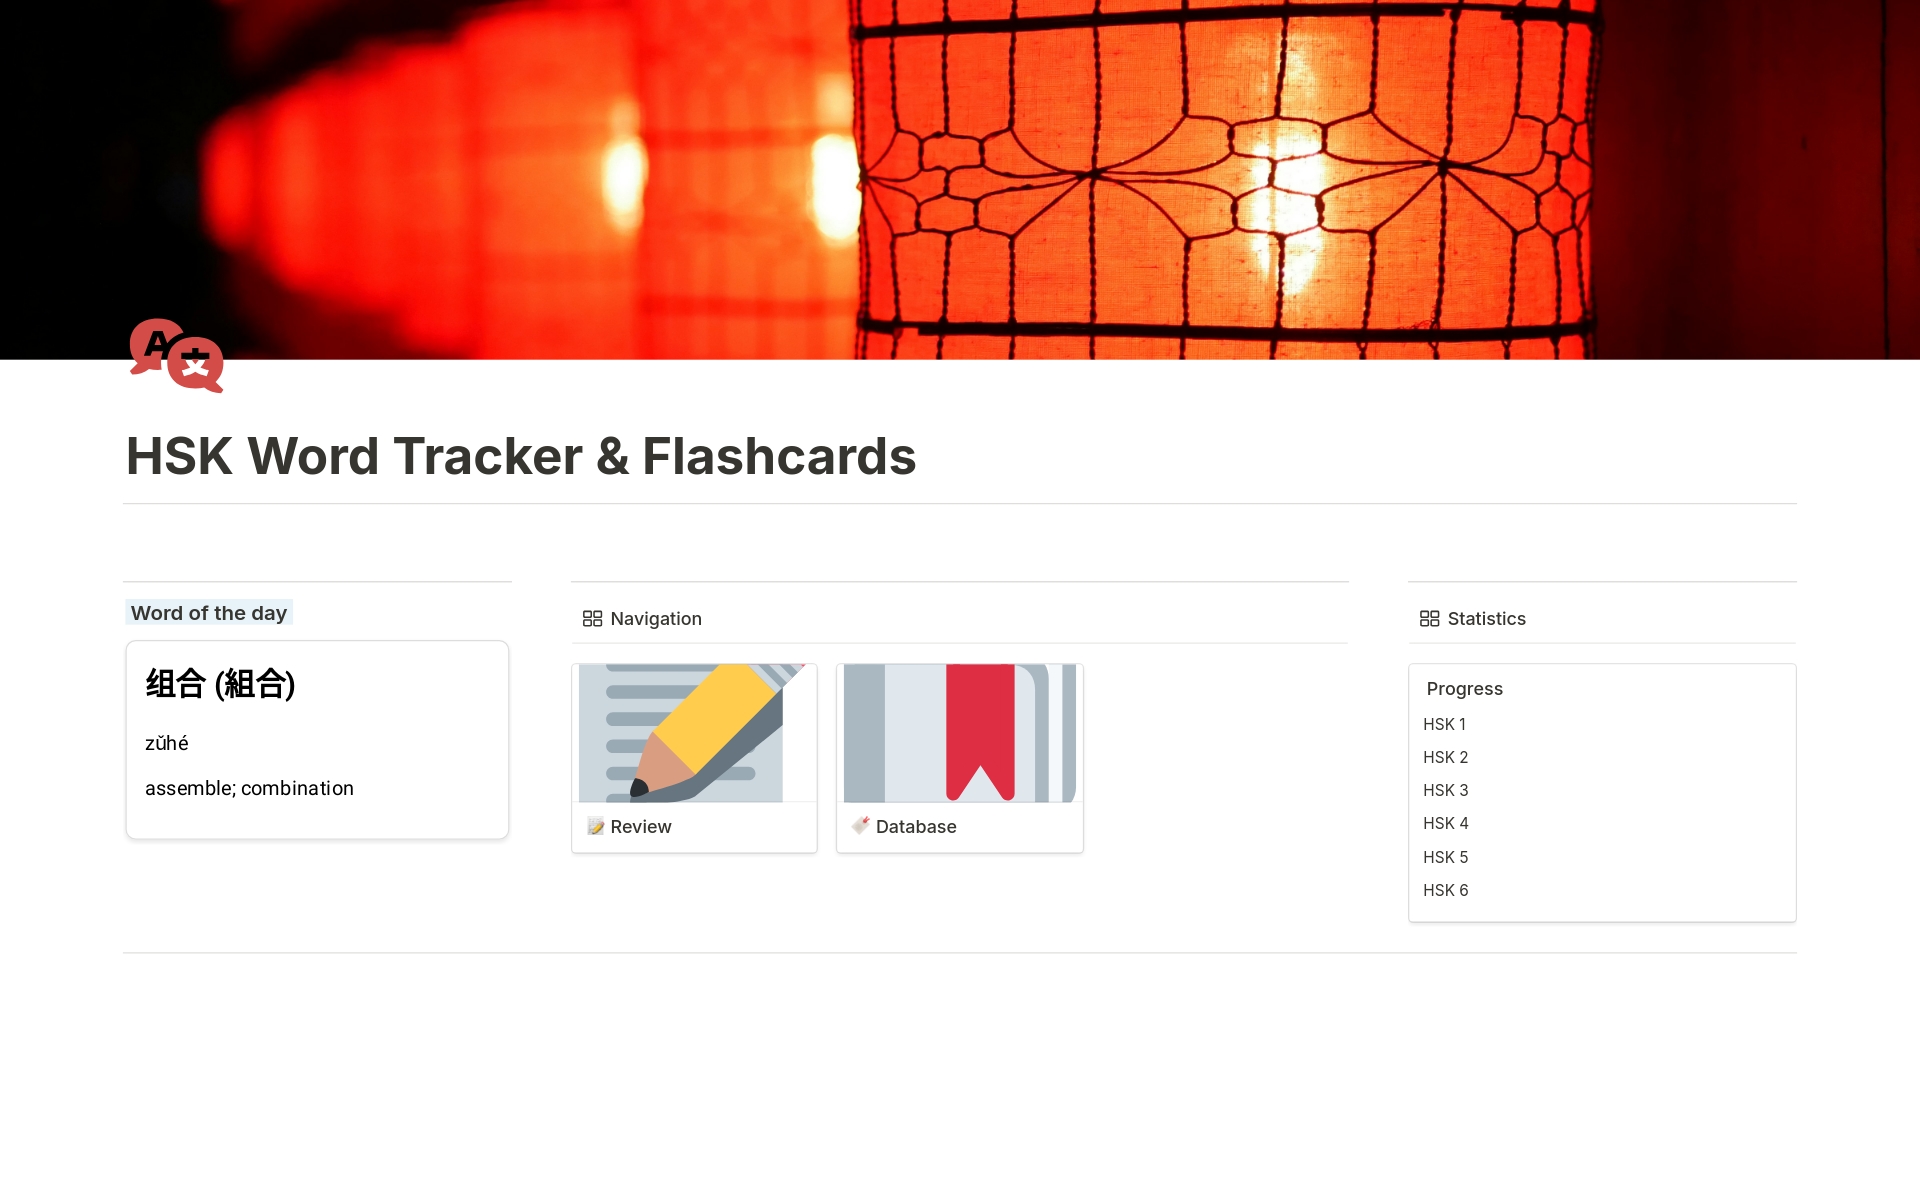 Uma prévia do modelo para HSK Word Tracker & Flashcards